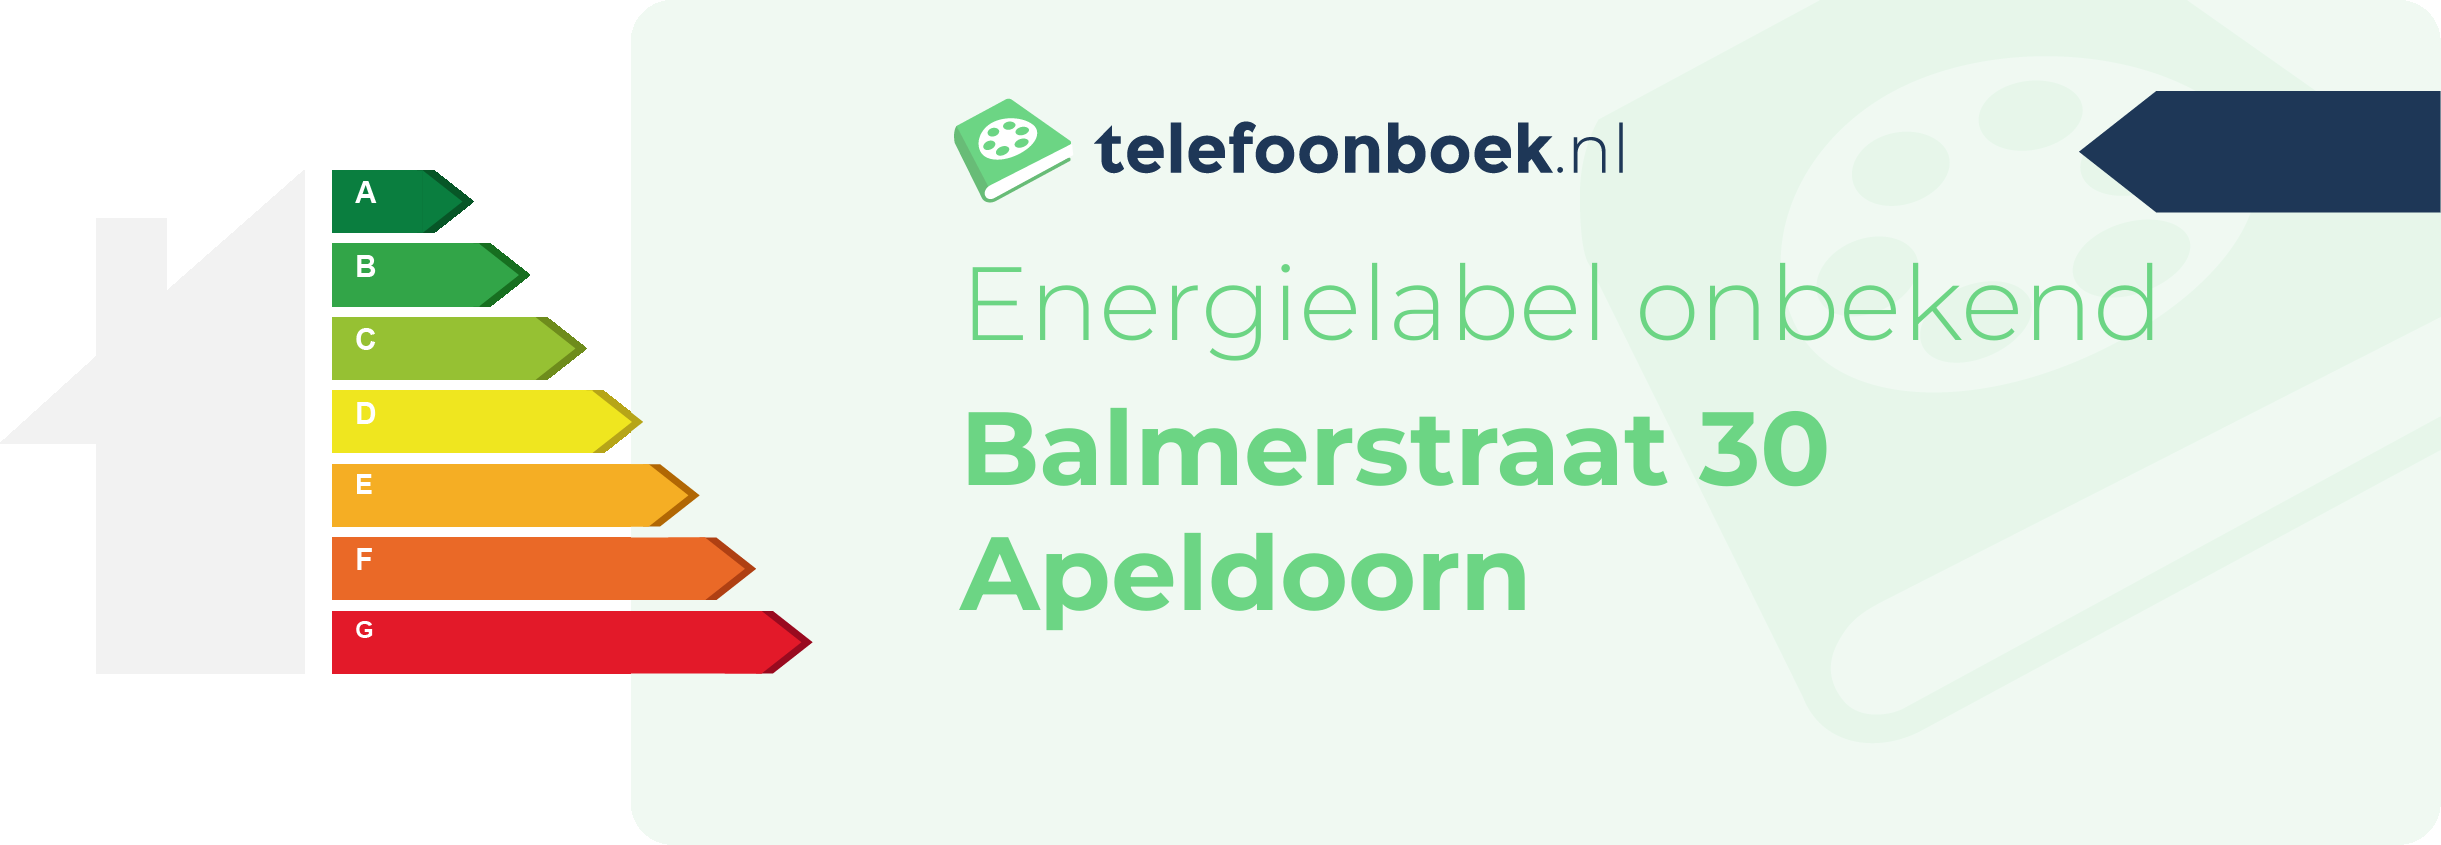 Energielabel Balmerstraat 30 Apeldoorn